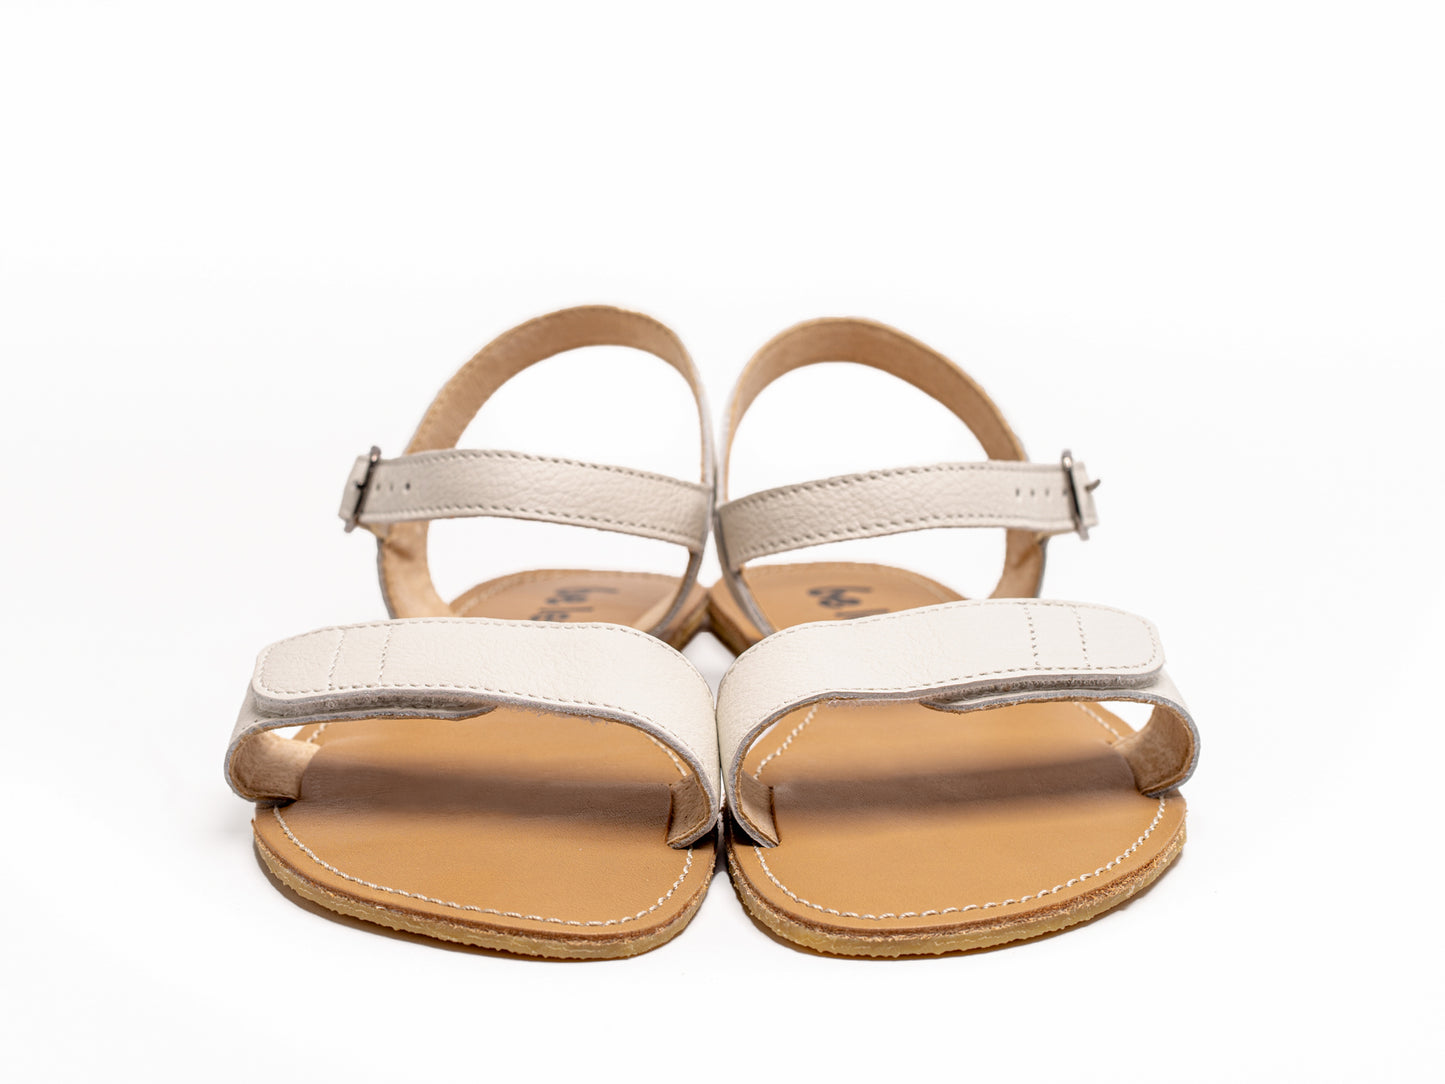 Be Lenka Grace Barefoot Sandals - Ivory White